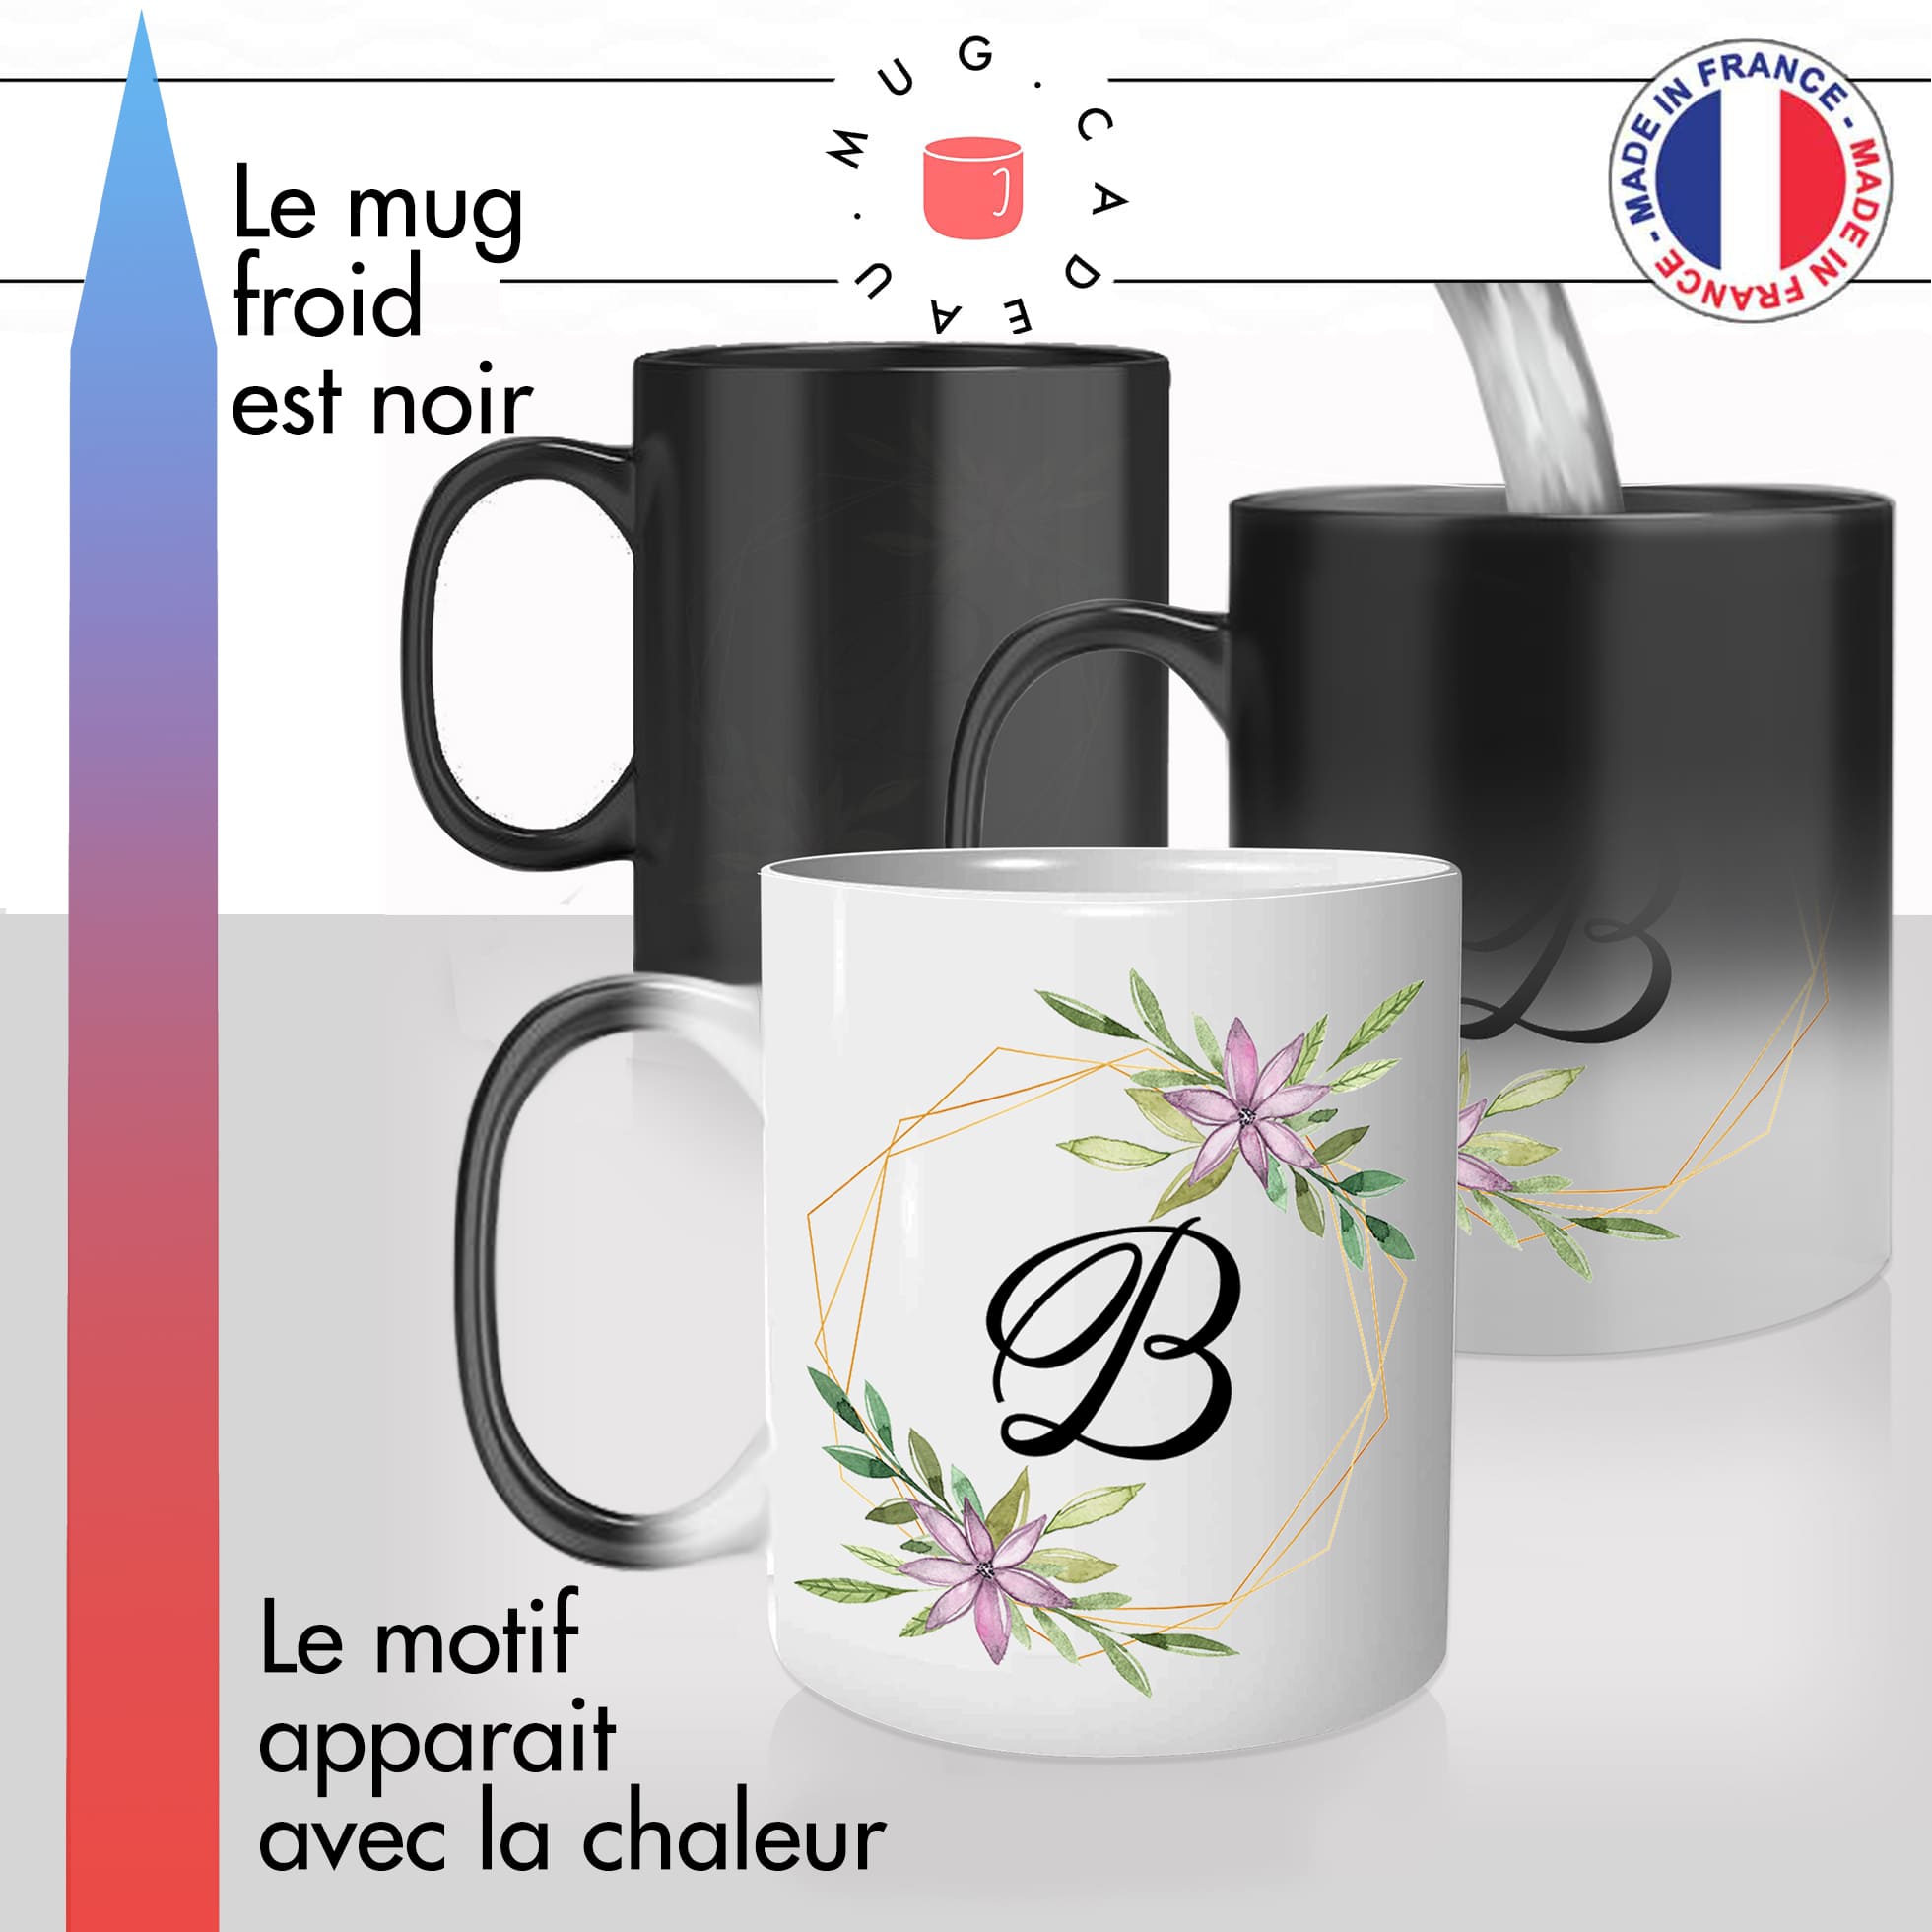 mug magique thermoréactif thermo chauffant personnalisé initiale lettre B fleurs mignon prenom idée cadeau original fun